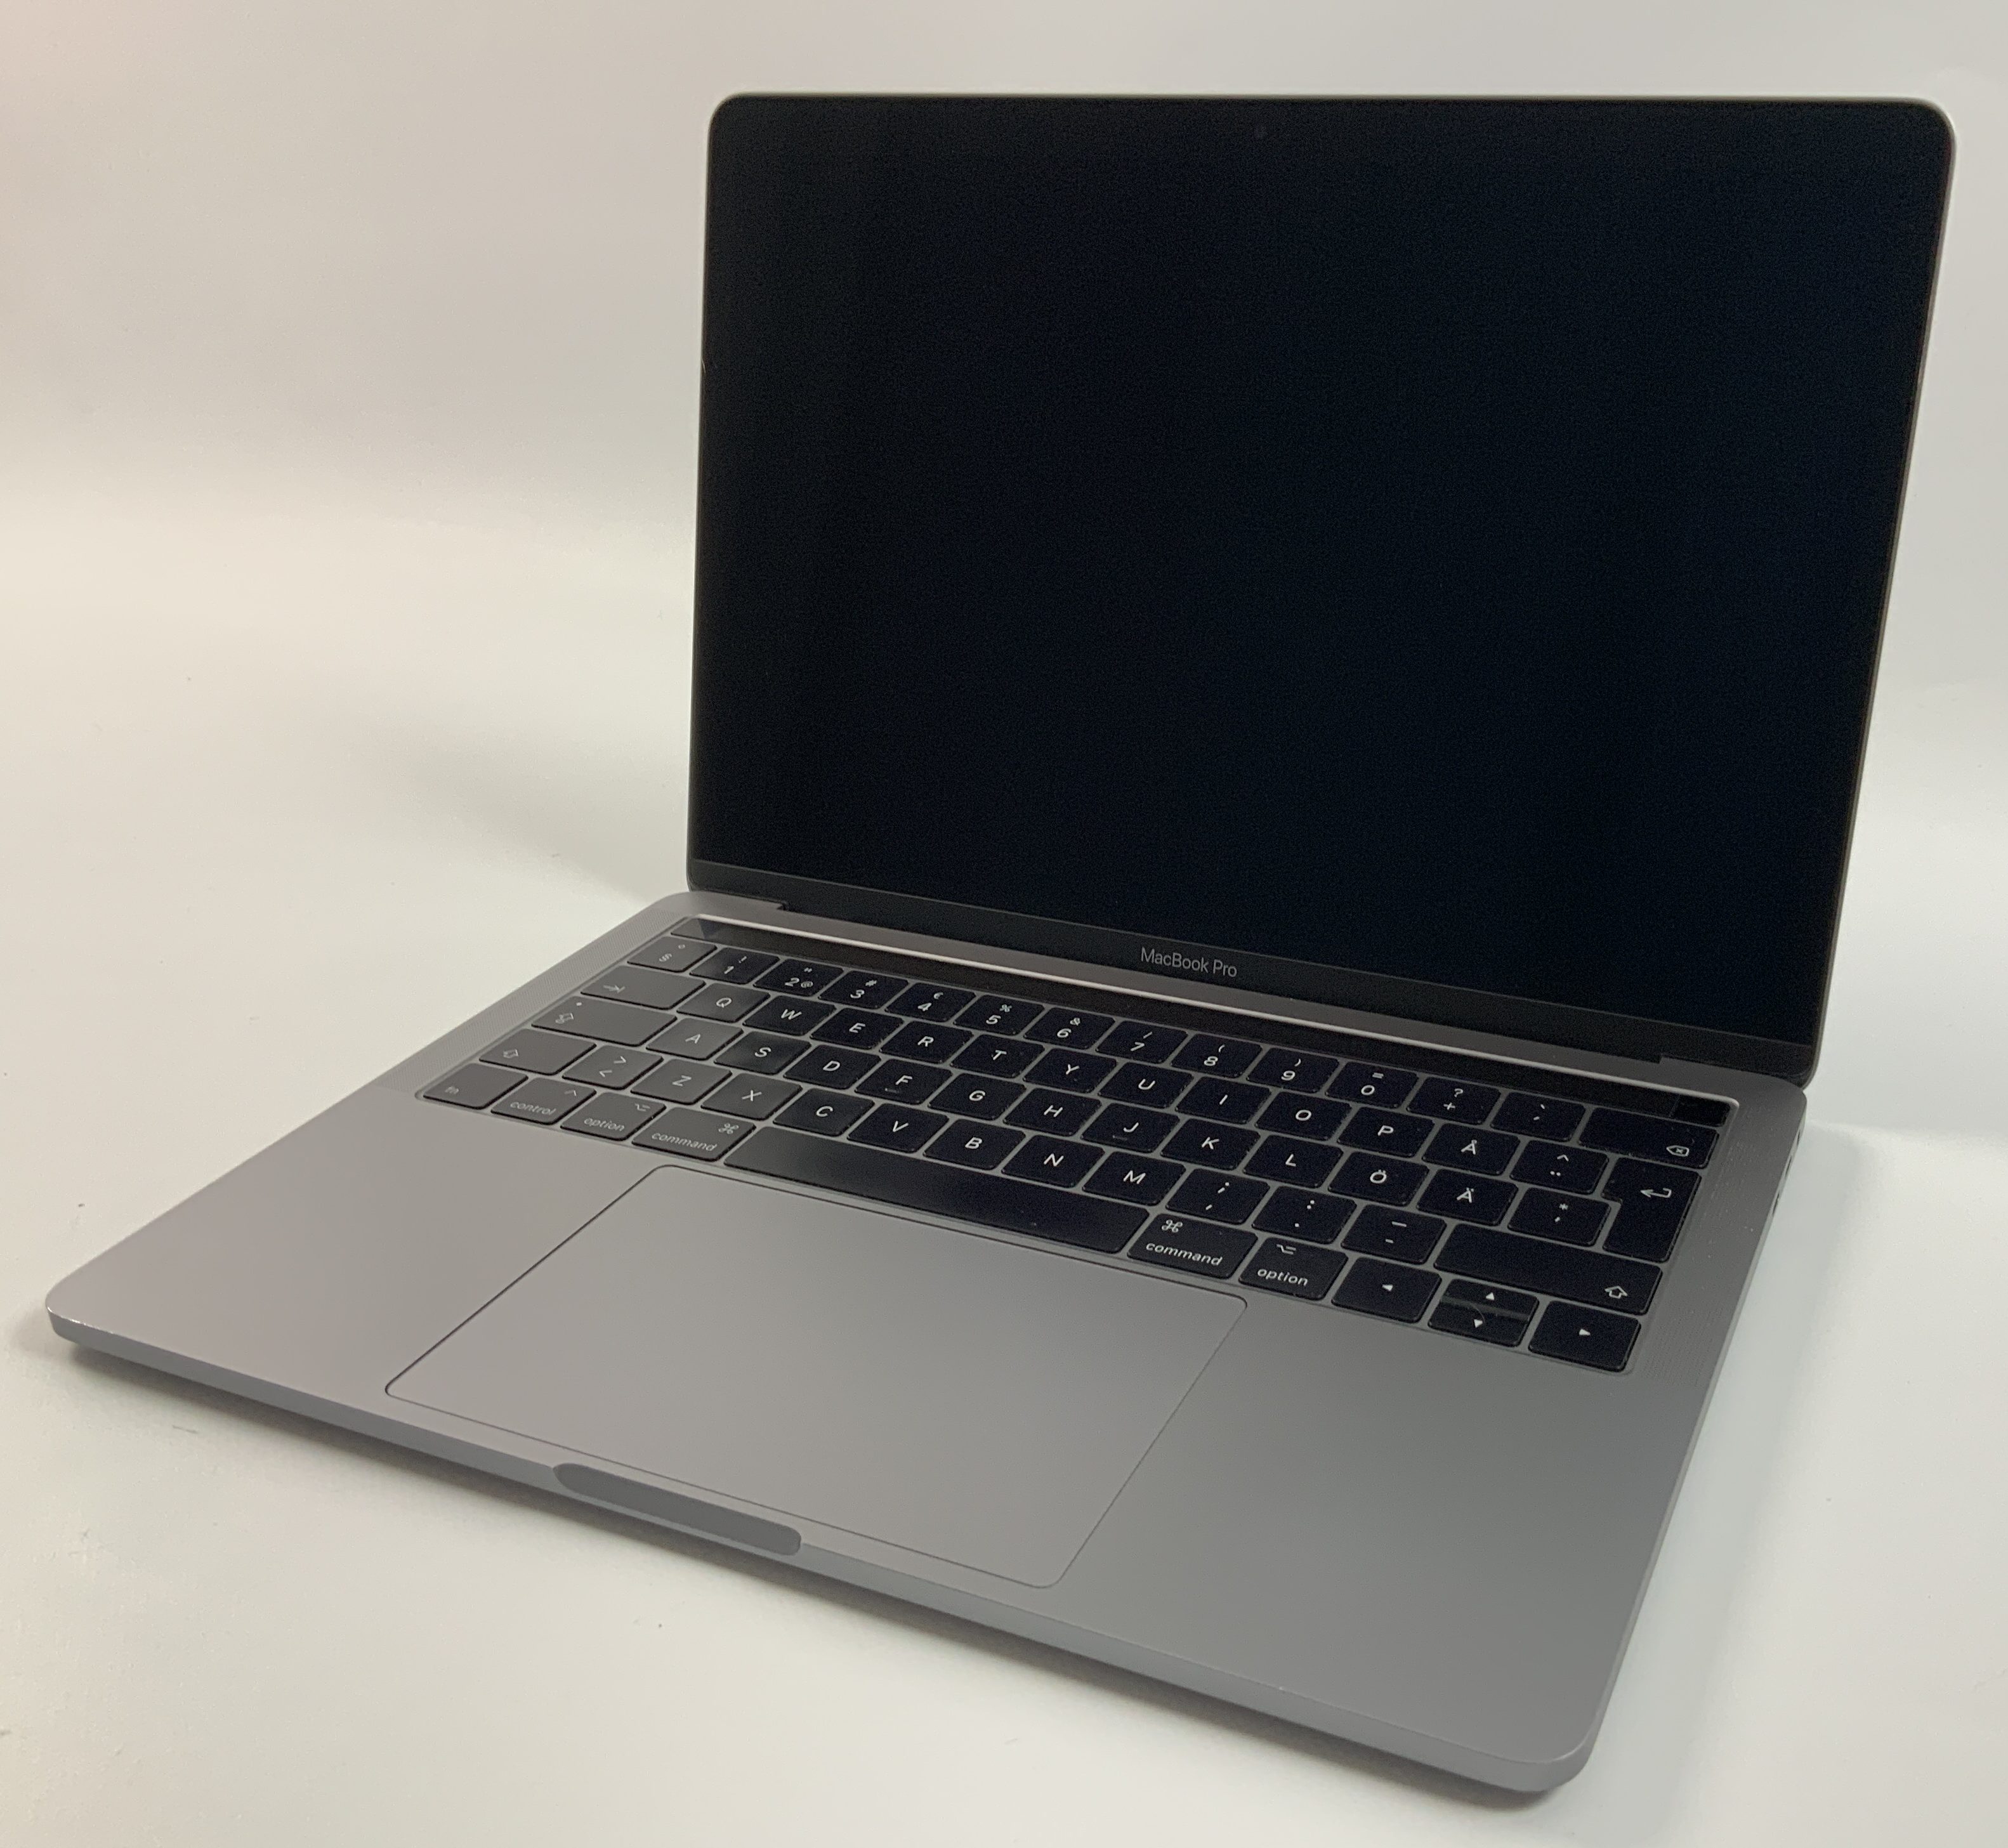 MacBook Pro 13" 4TBT Mid 2017 (Intel Core i5 3.1 GHz 8 GB RAM 256 GB SSD), Space Gray, Intel Core i5 3.1 GHz, 8 GB RAM, 256 GB SSD, immagine 1